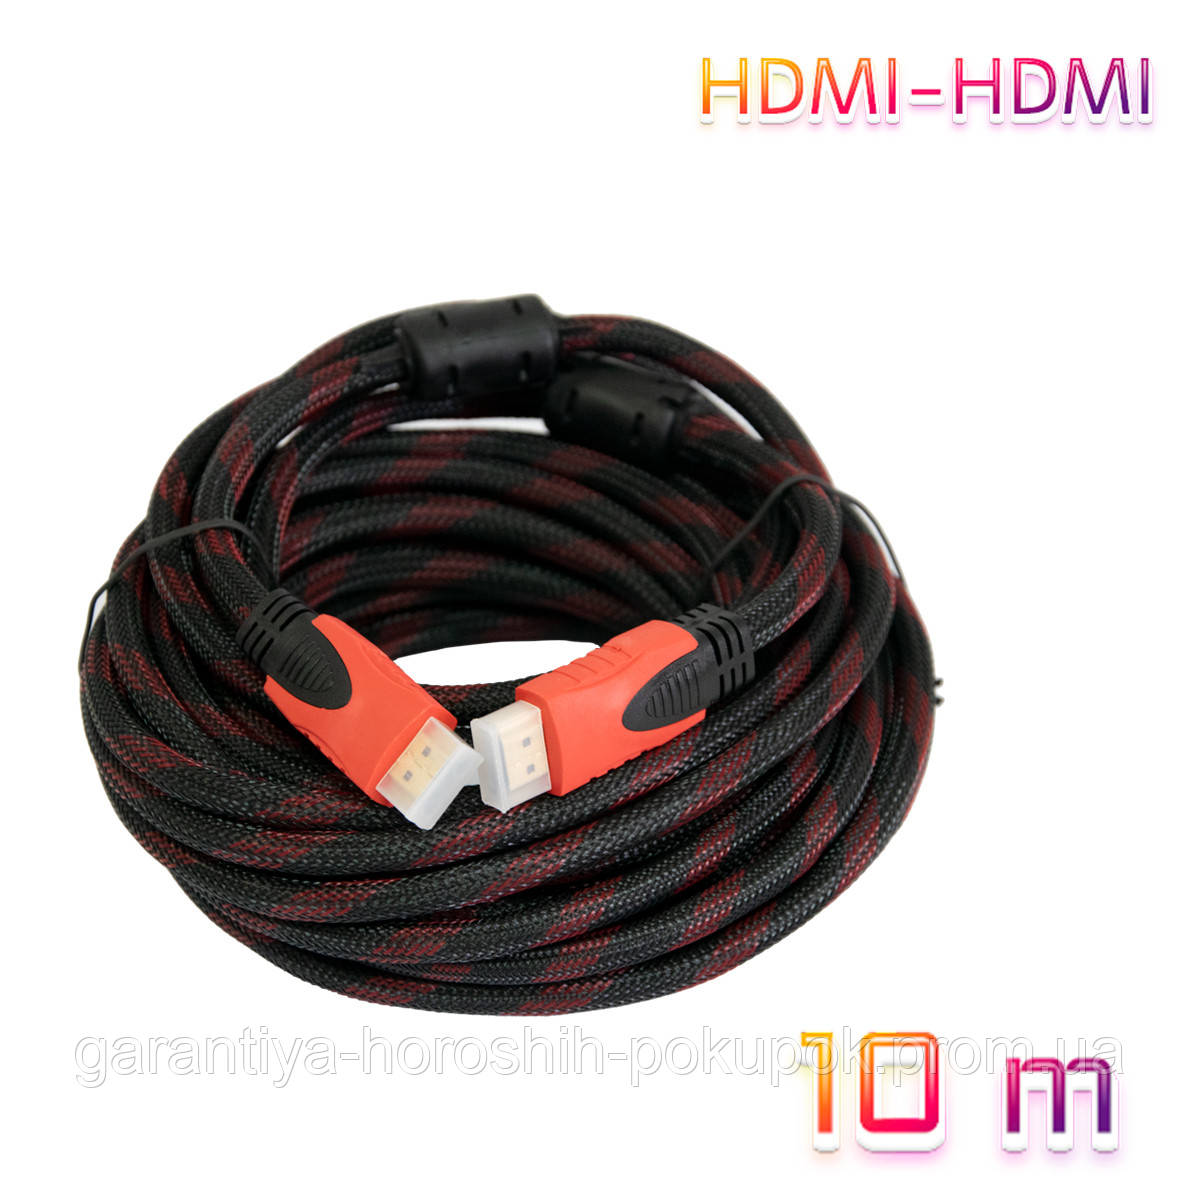 Кабель-удлинитель HDMI-HDMI 10 Метров, HDMI Кабель для Монитора и Телевизора, Шнур-удлинитель (GA) — в Категории "кабели для Электроники" на Bigl.ua (1738320180)